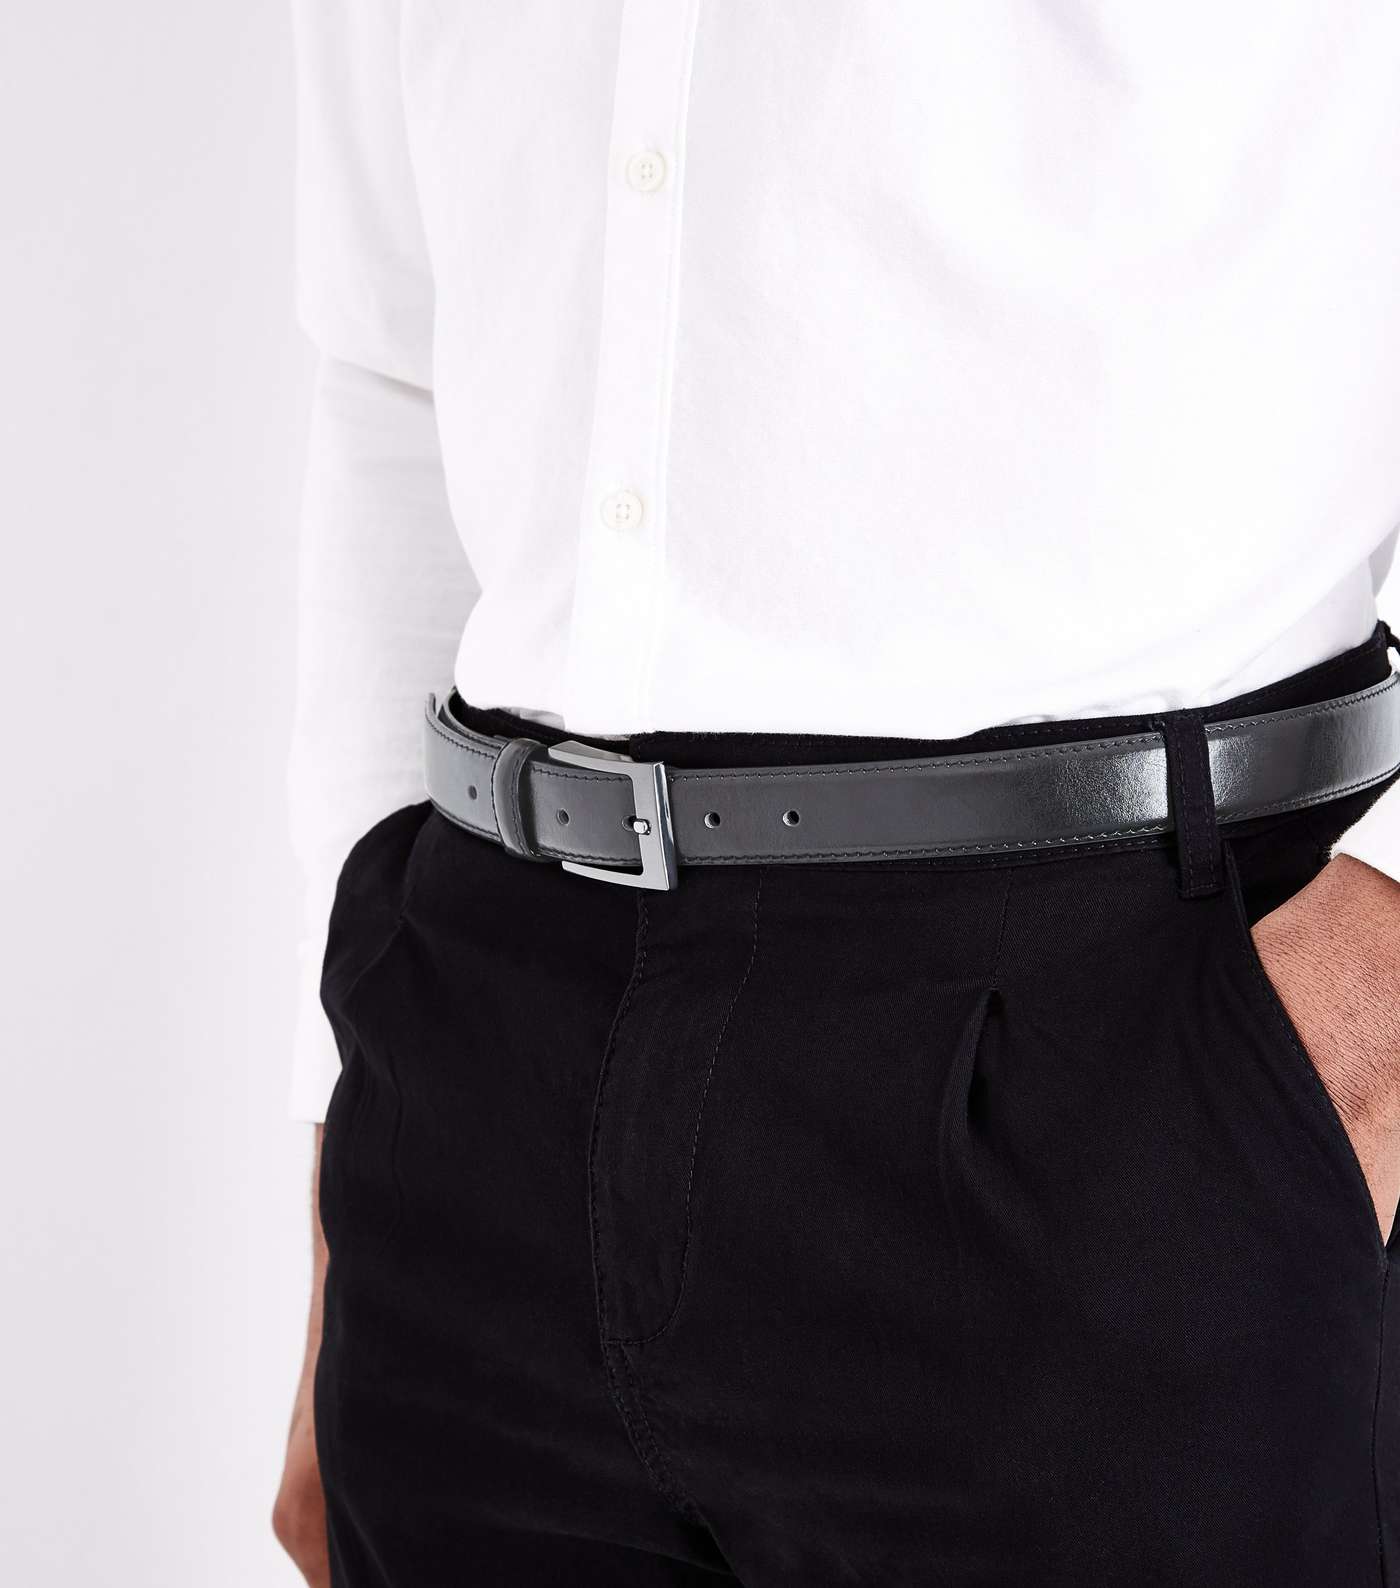 Black Leather-Look Formal Belt Image 2